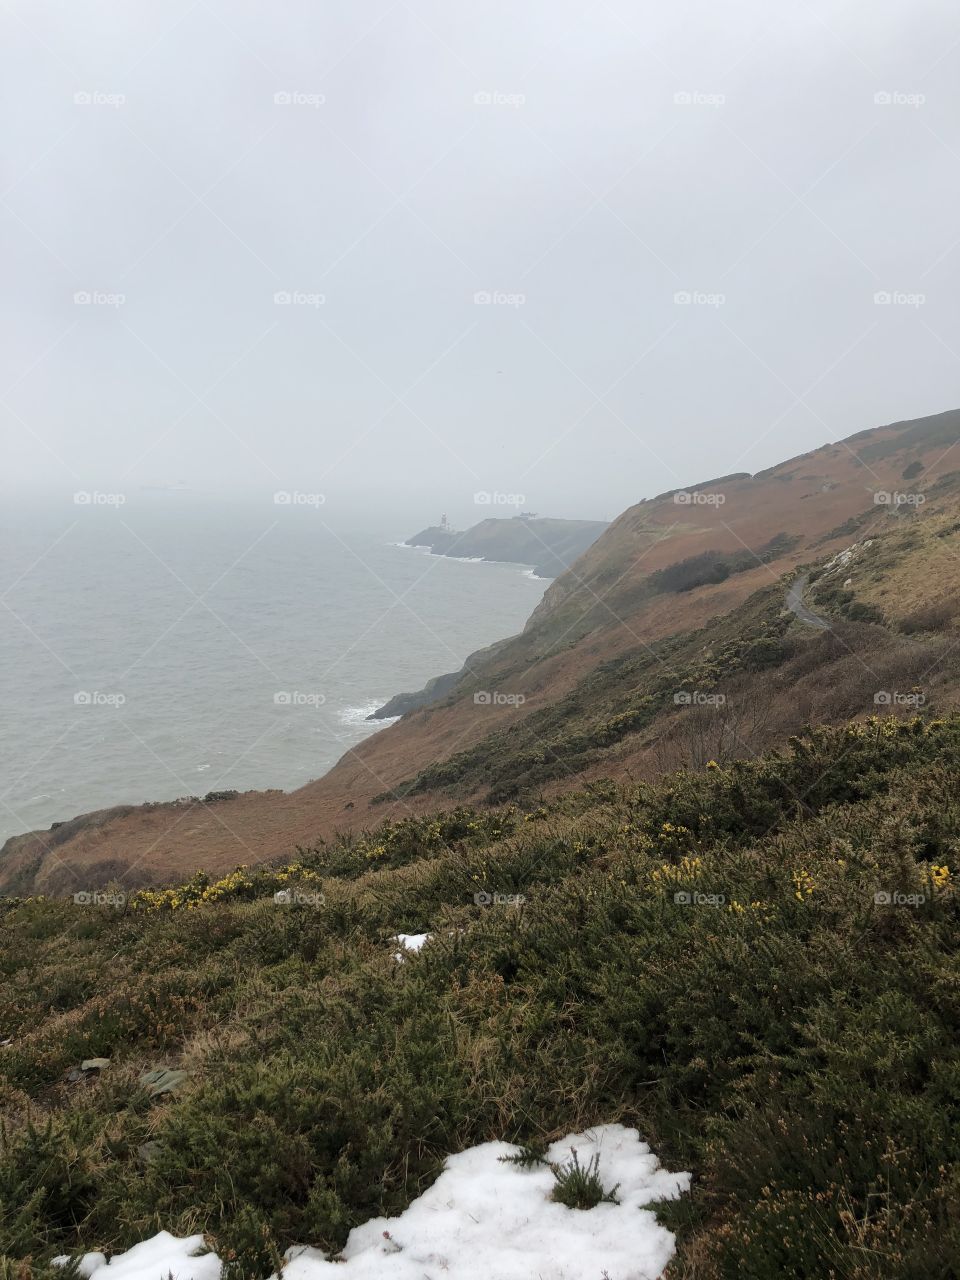 Irish cliffs overlooking the ominous sea